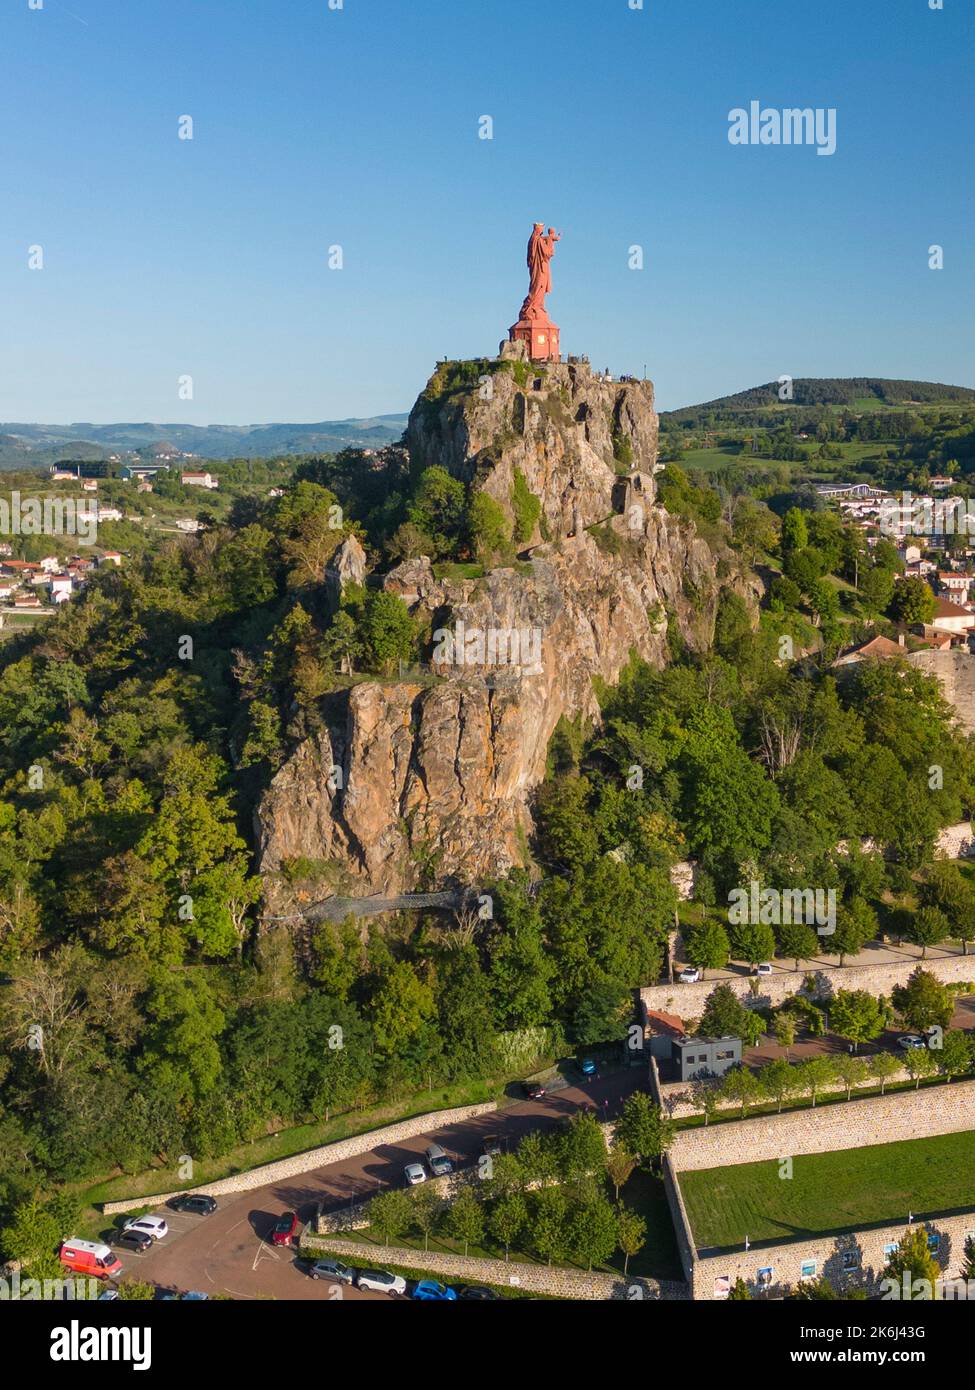 Luftaufnahme der eisernen Statue von Notre-Dame de France (die Jungfrau Maria) mit Blick auf die Stadt Le Puy en Velay, Haute Loire, Frankreich Stockfoto